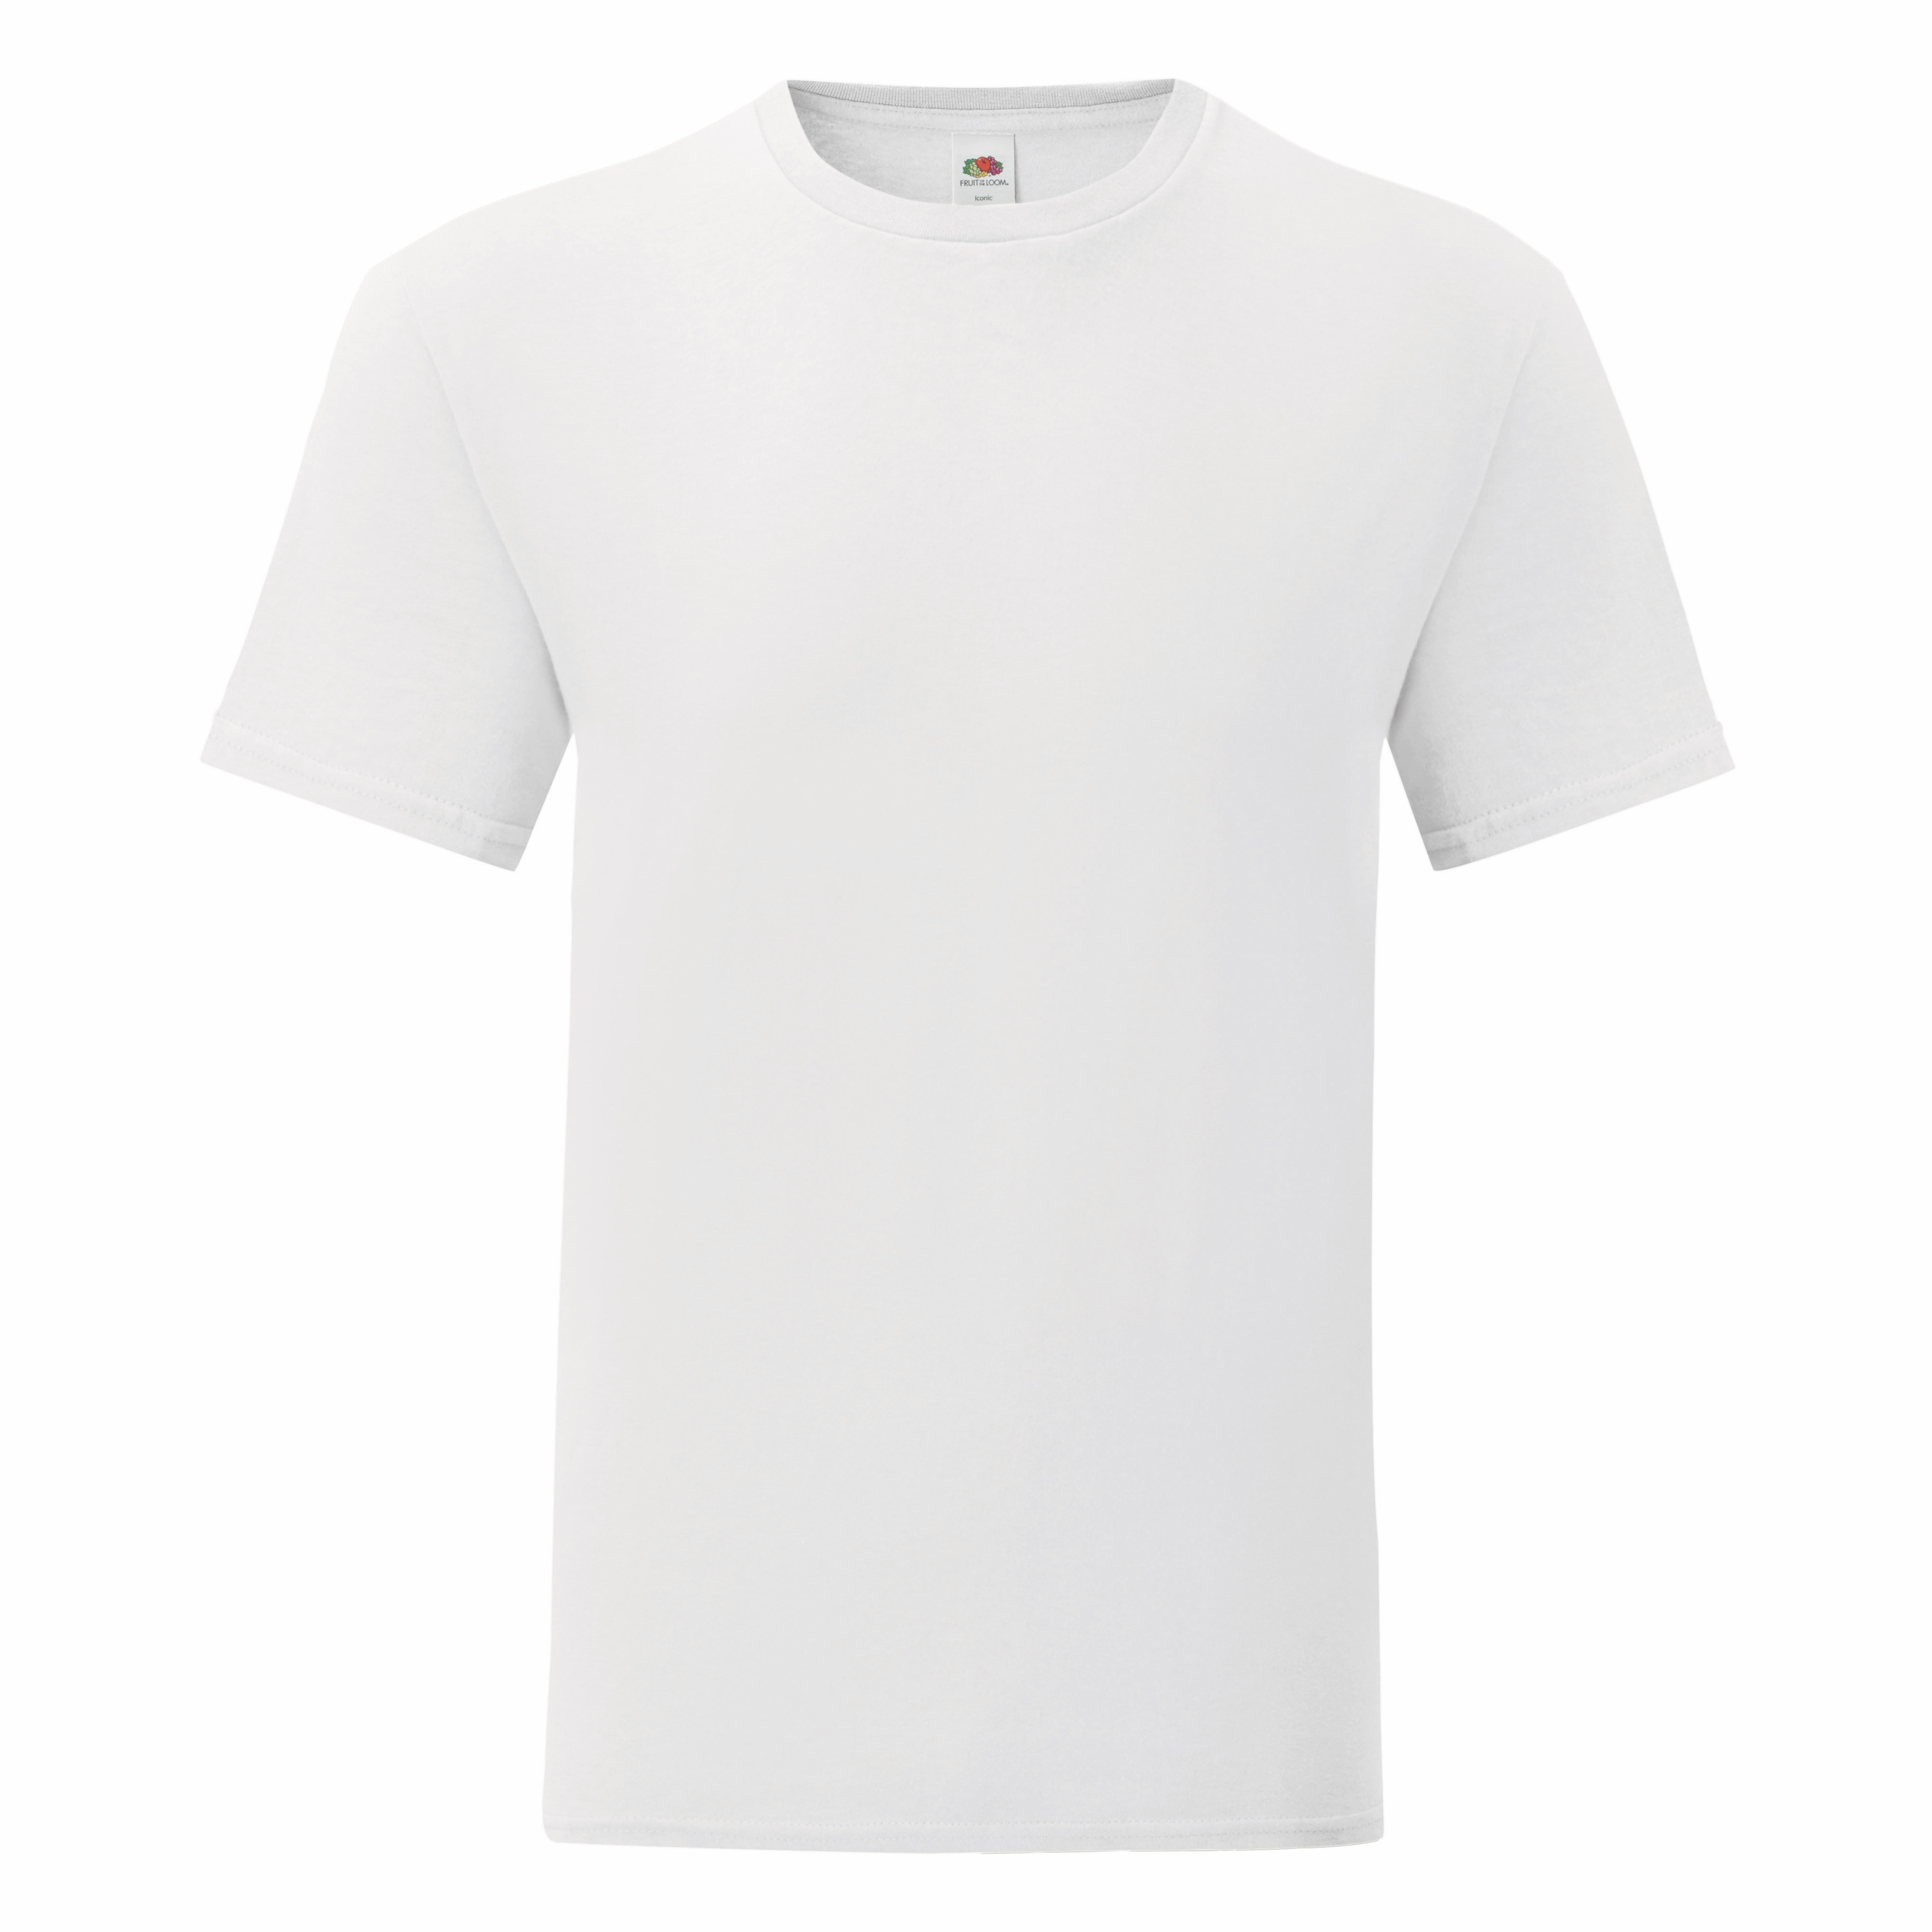 Koszulka męska ICONIC T z odrywaną metką Fruit of the Loom Biały